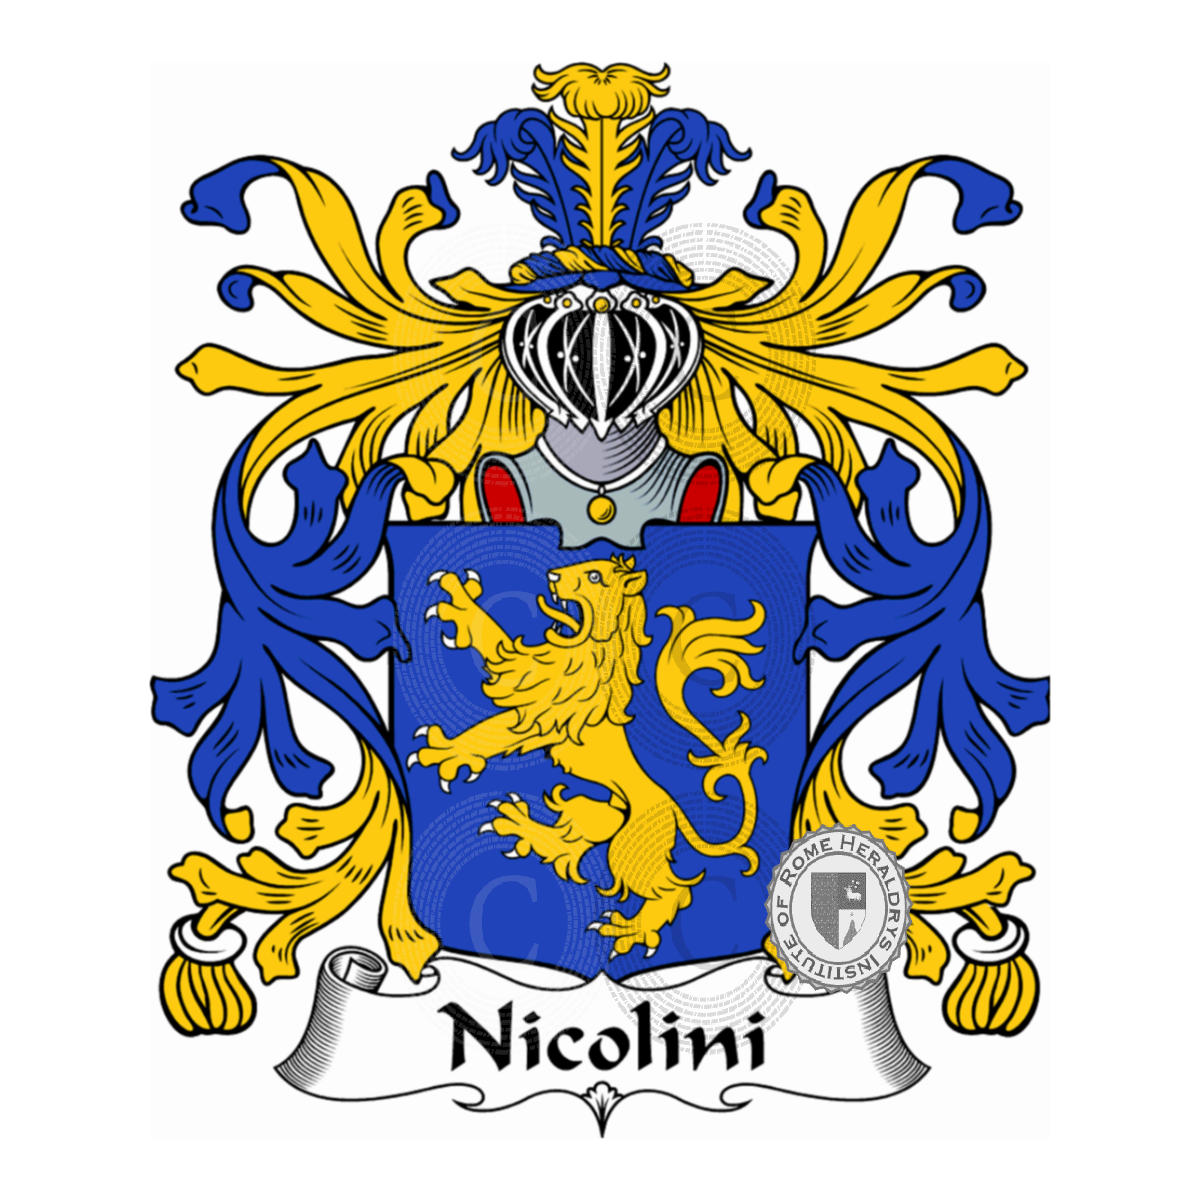 Stemma della famigliaNicolini, Niccolini,Nicolini Sirigatti